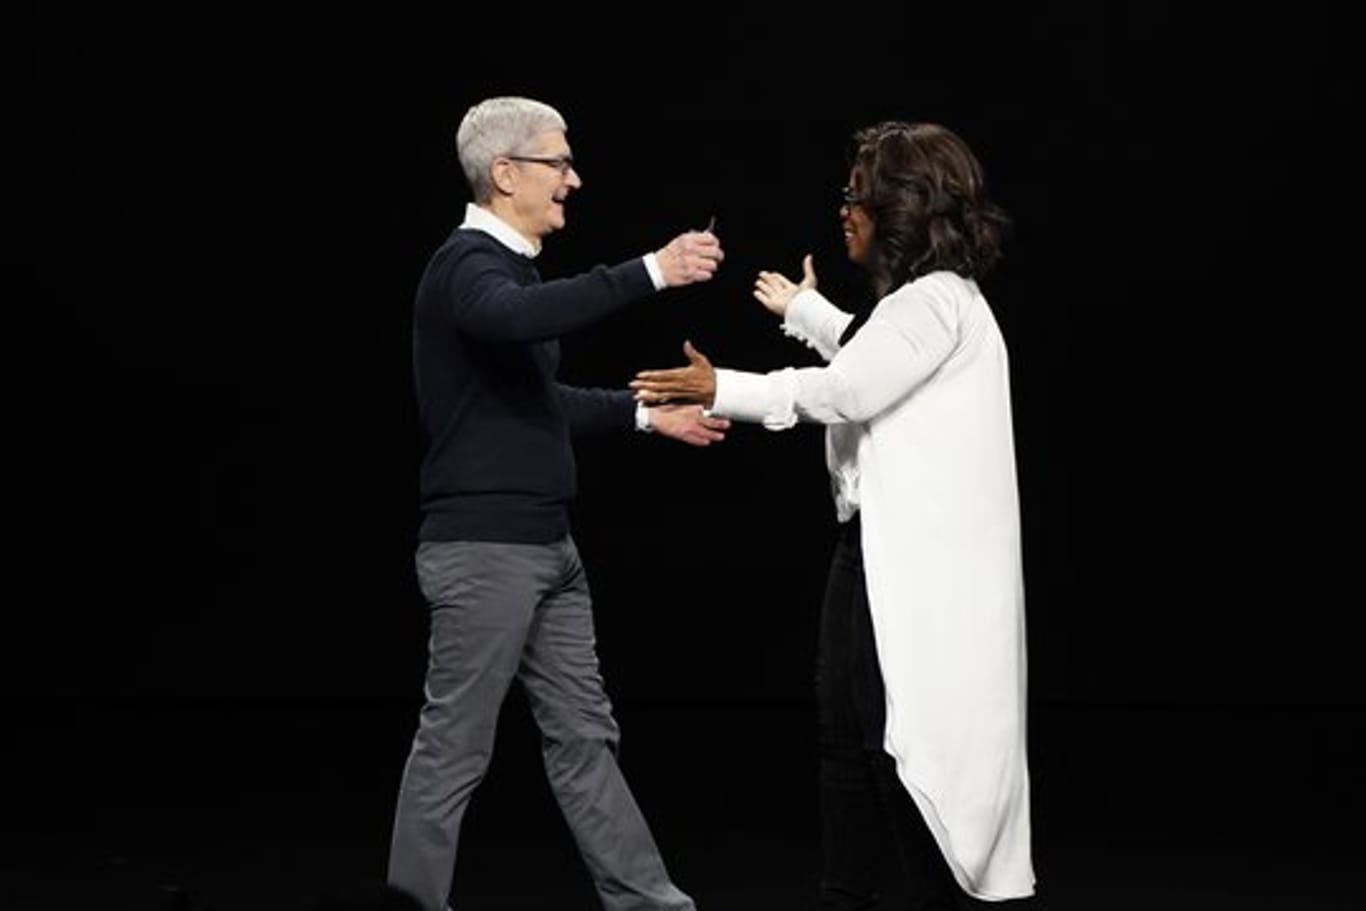 Tim Cook, Vorstandsvorsitzender von Apple, und Oprah Winfrey, Moderatorin aus den USA, begrüßen sich bei der Vorstellung neuer Apple-Produkte auf der Bühne.